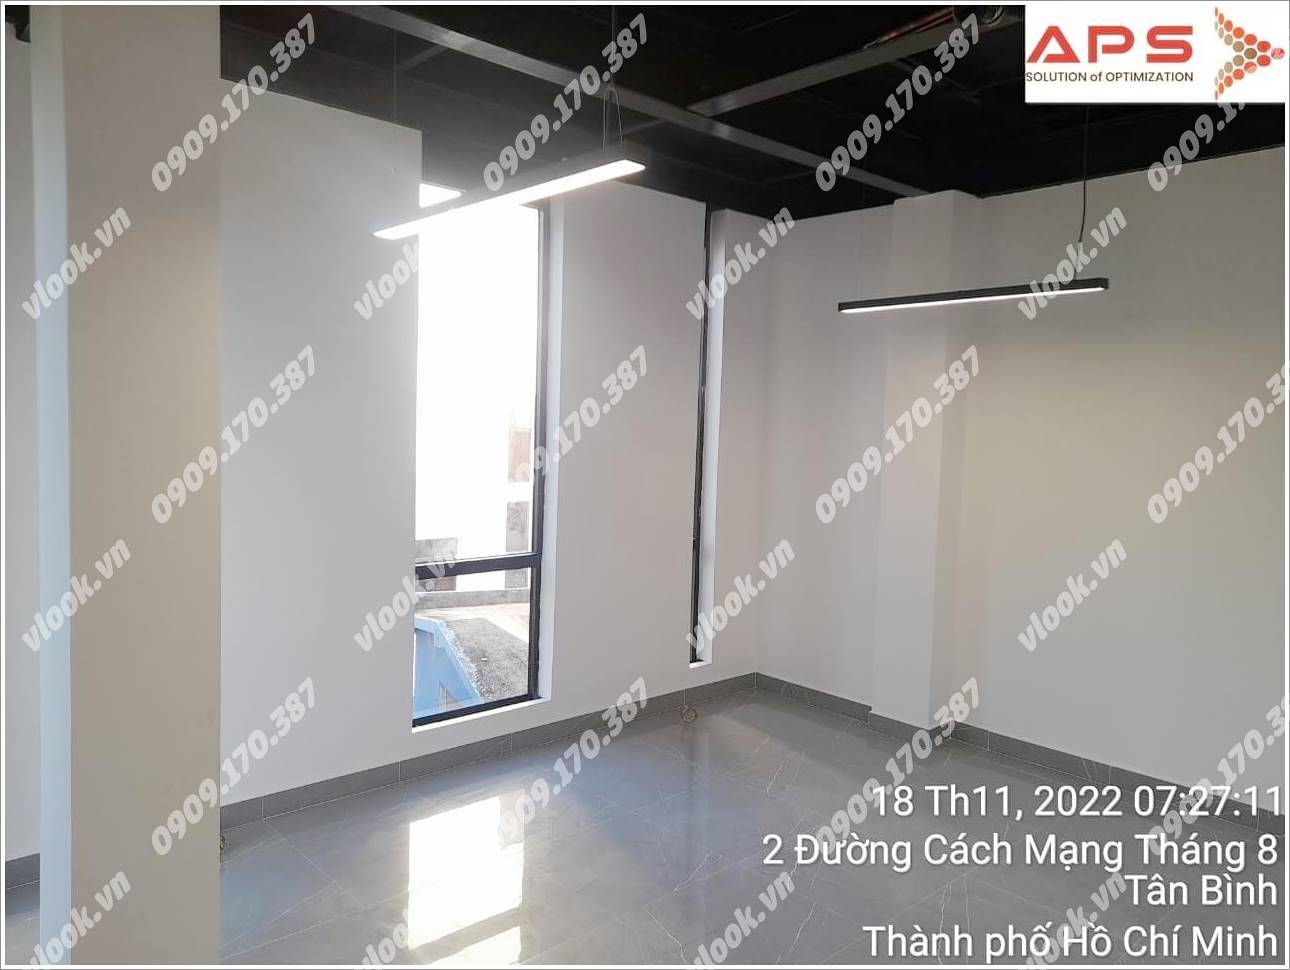 Cao ốc văn phòng cho thuê Tòa nhà 737 CMT8, Quận Tân Bình, TP.HCM - vlook.vn